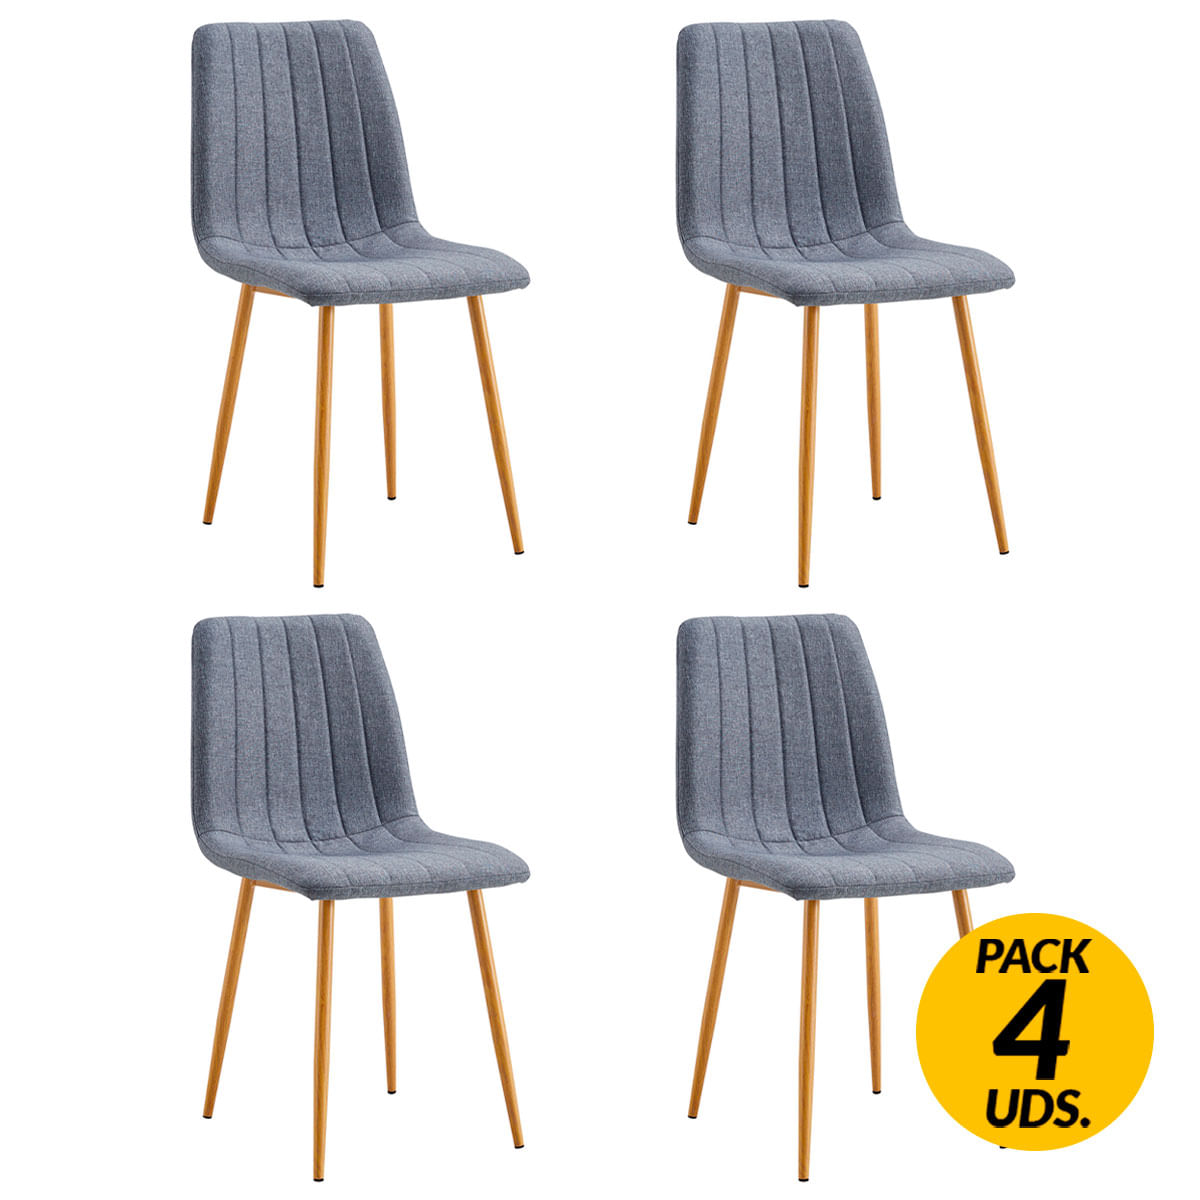 Adec - Adec Pack de 4 sillas de comedor Nails tejido tapizado